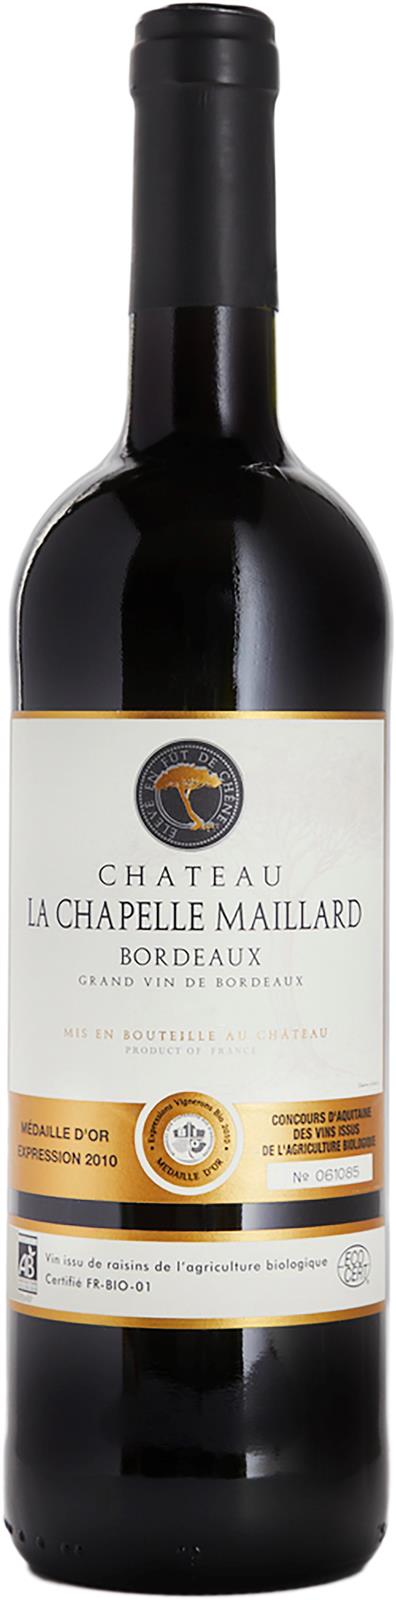 Chateau La Chapelle Maillard Bordeaux Rouge 2017 (France) (Duplicate)